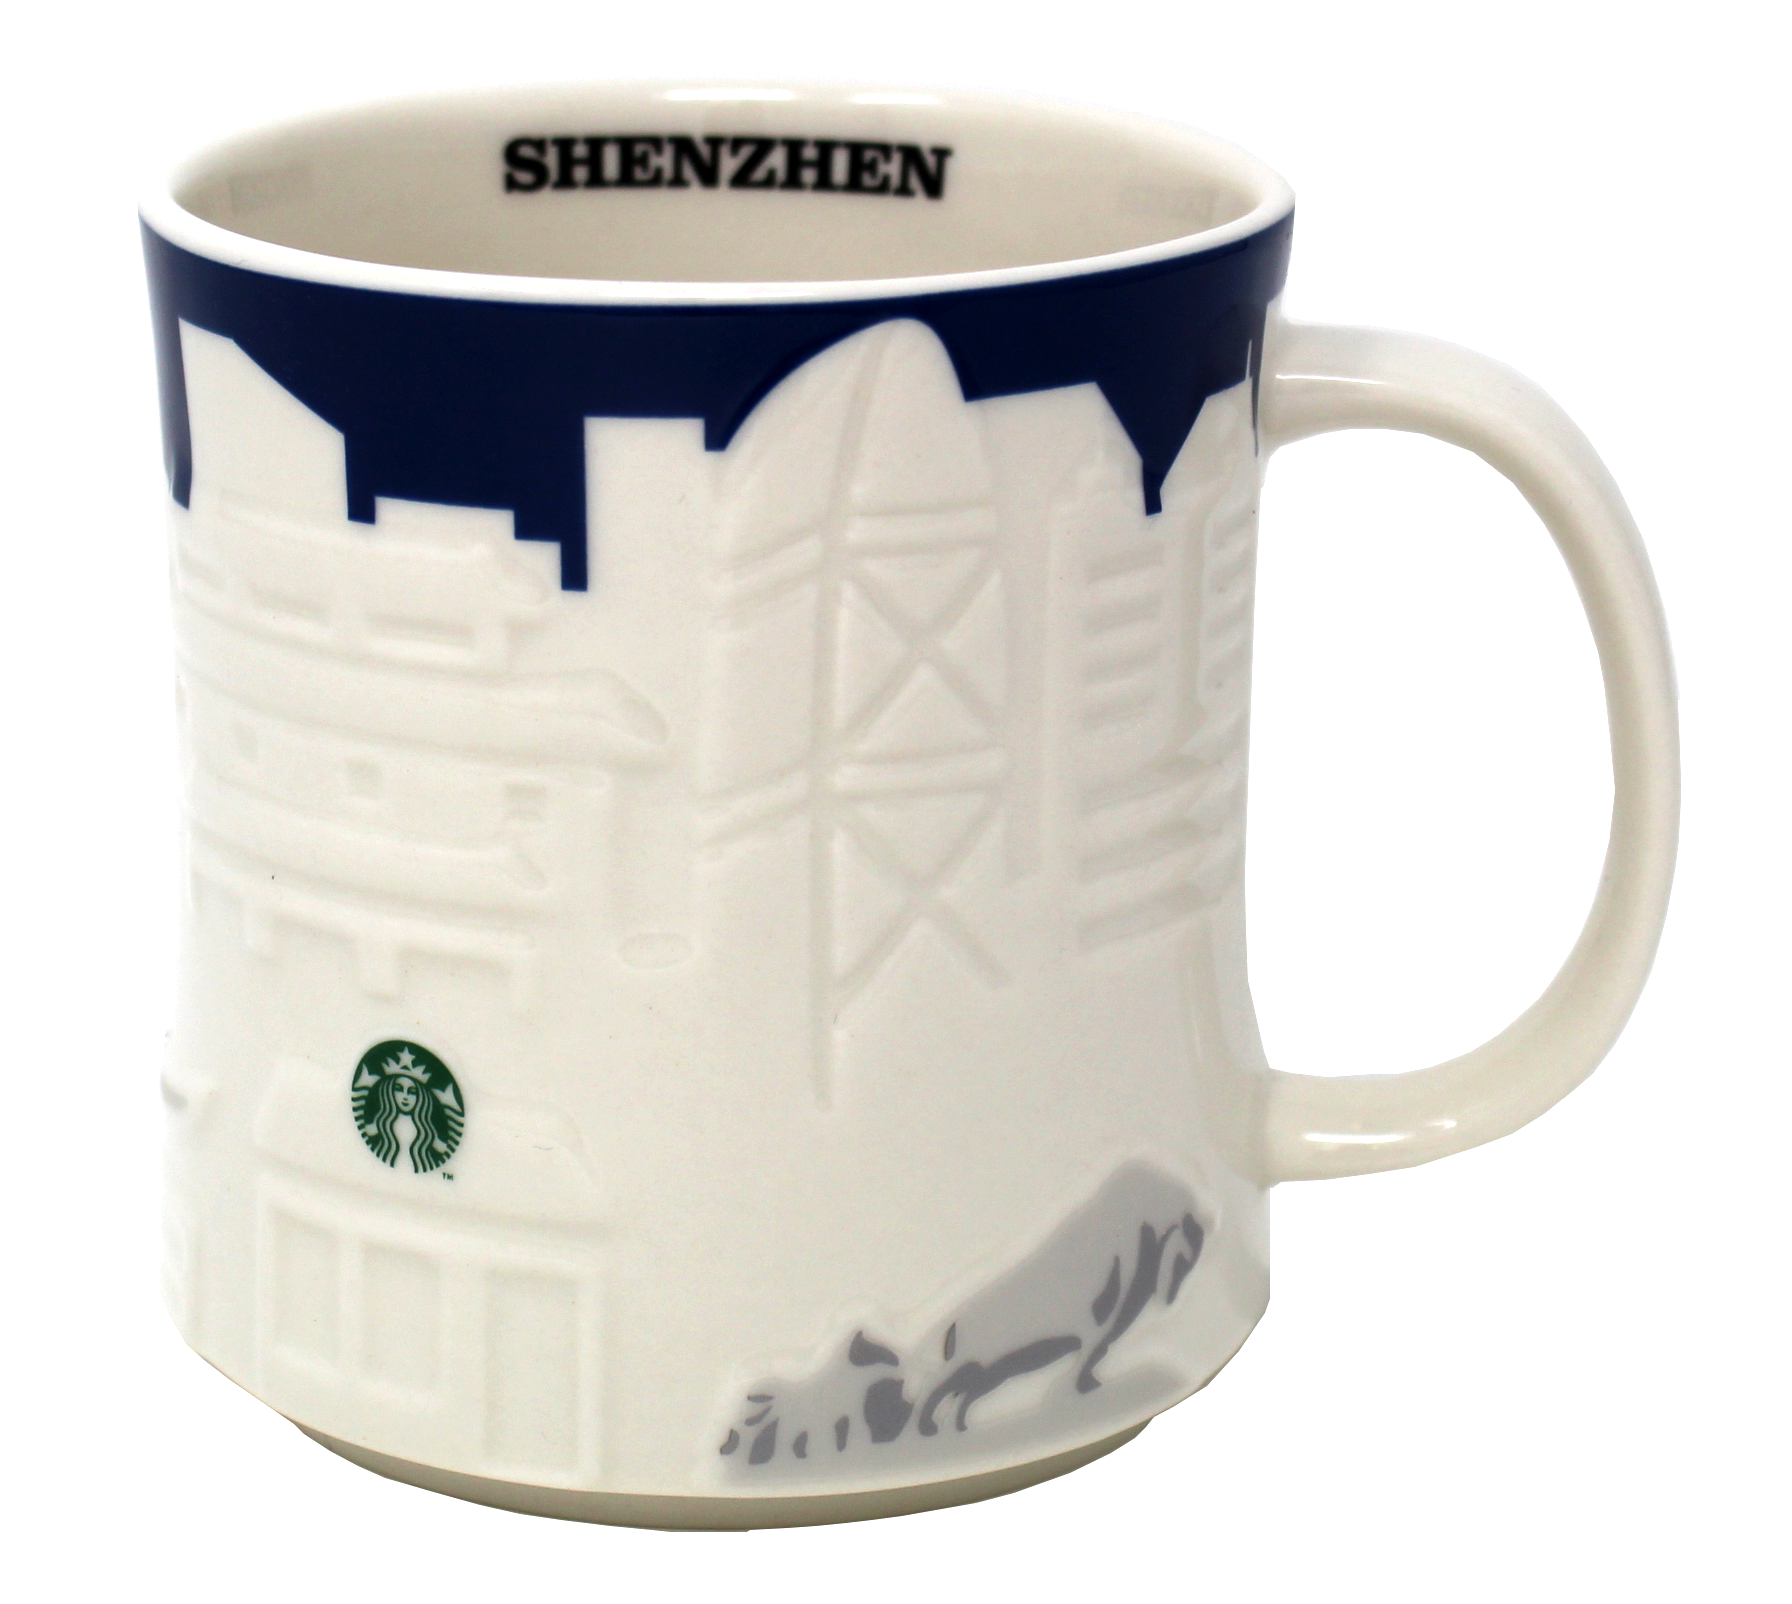 Starbucks Collector Relief Series Shenzhen Mug, 16 Oz